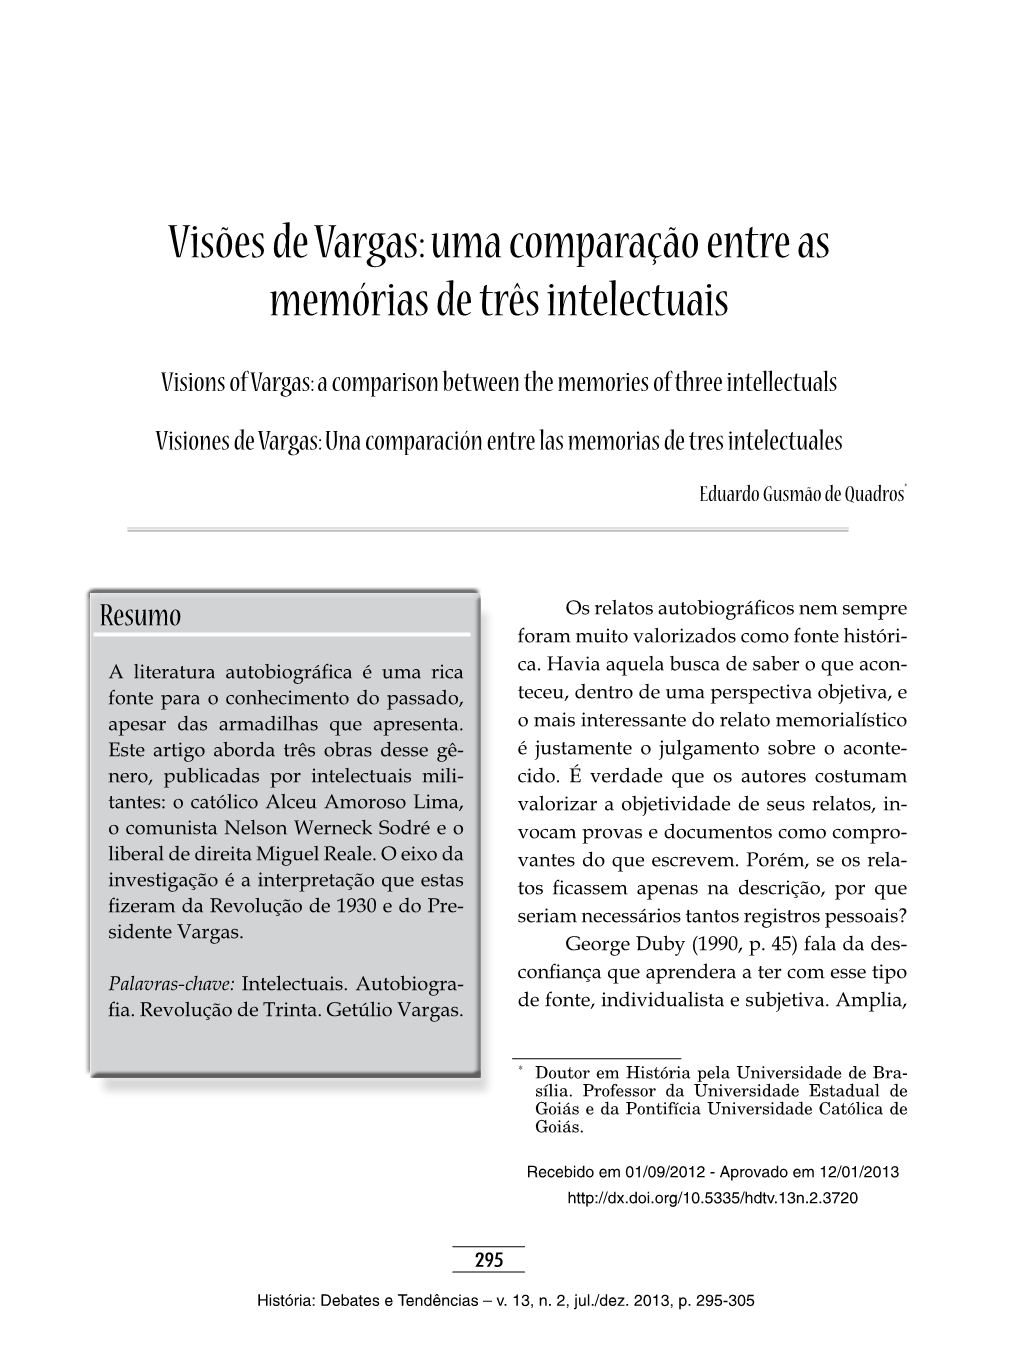 Visões De Vargas: Uma Comparação Entre As Memórias De Três Intelectuais